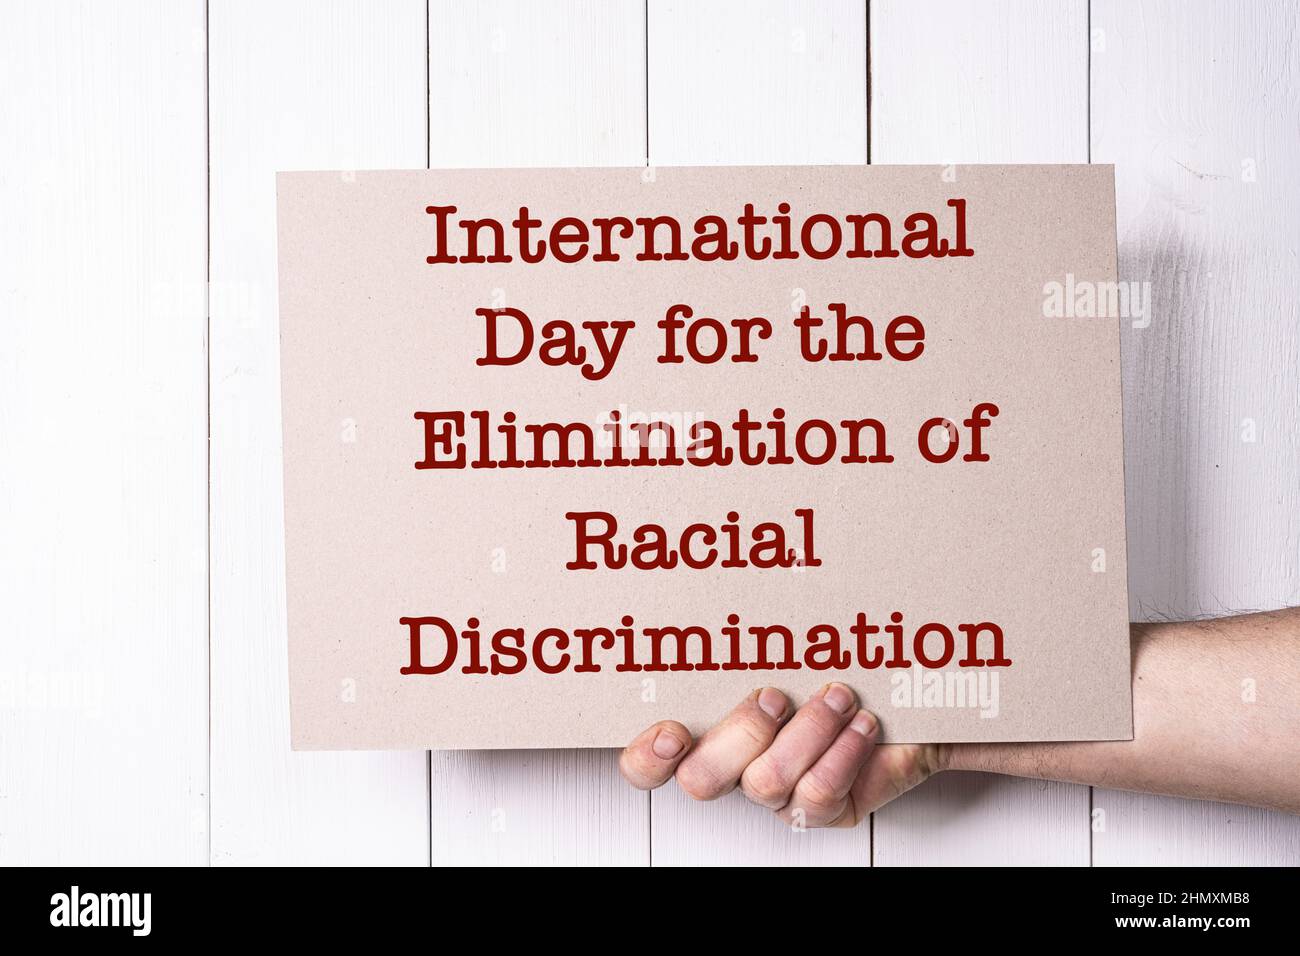 Un segno che celebra la Giornata Internazionale delle Nazioni Unite per l'eliminazione della discriminazione razziale, il 21 marzo. Foto Stock